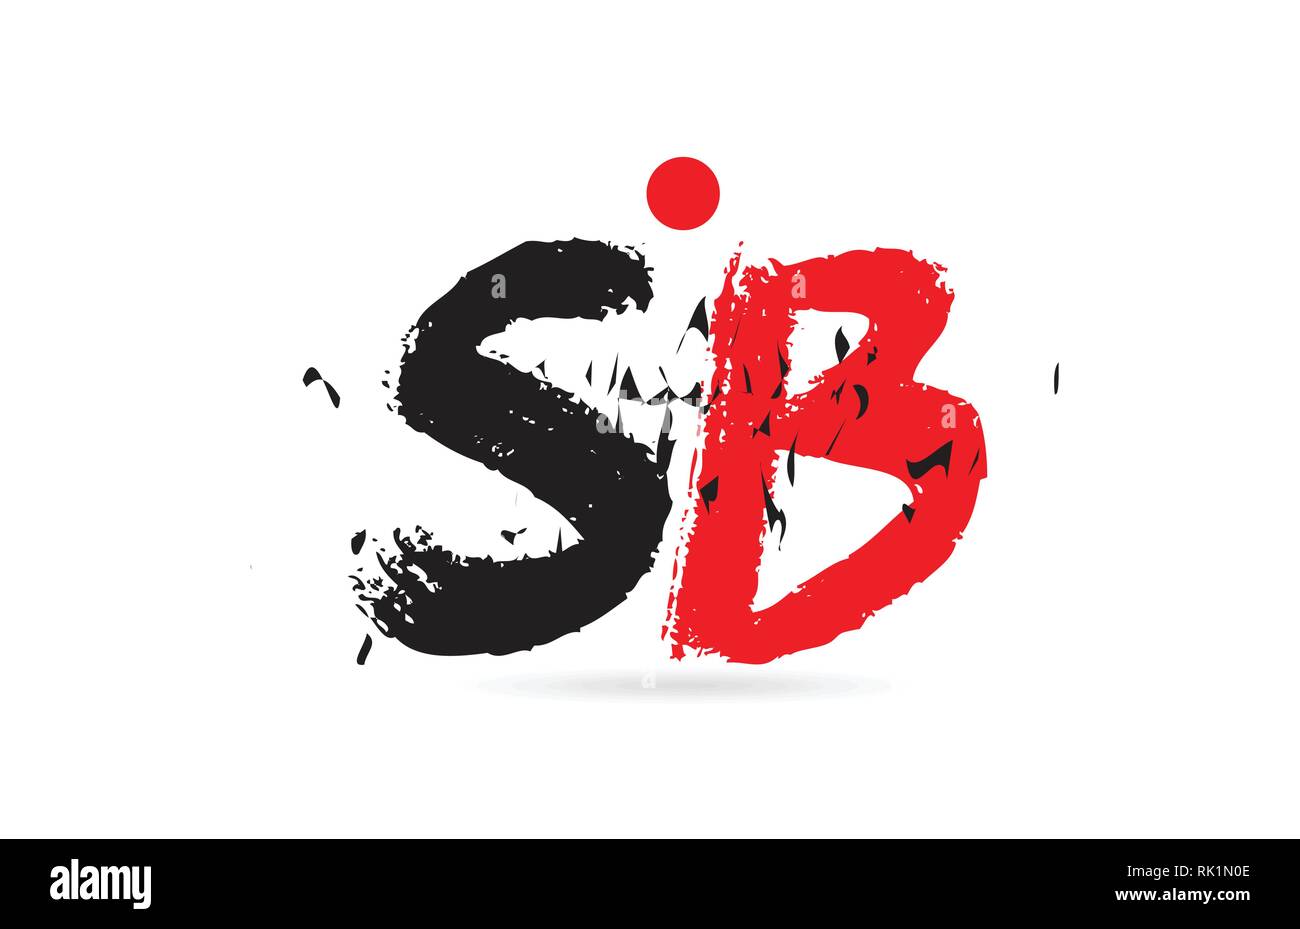 Design von Buchstaben Kombination SB S B mit grunge Textur und Schwarz Rot Farbe, das als Logo taugt, für ein Unternehmen oder ein Geschäft Stock Vektor